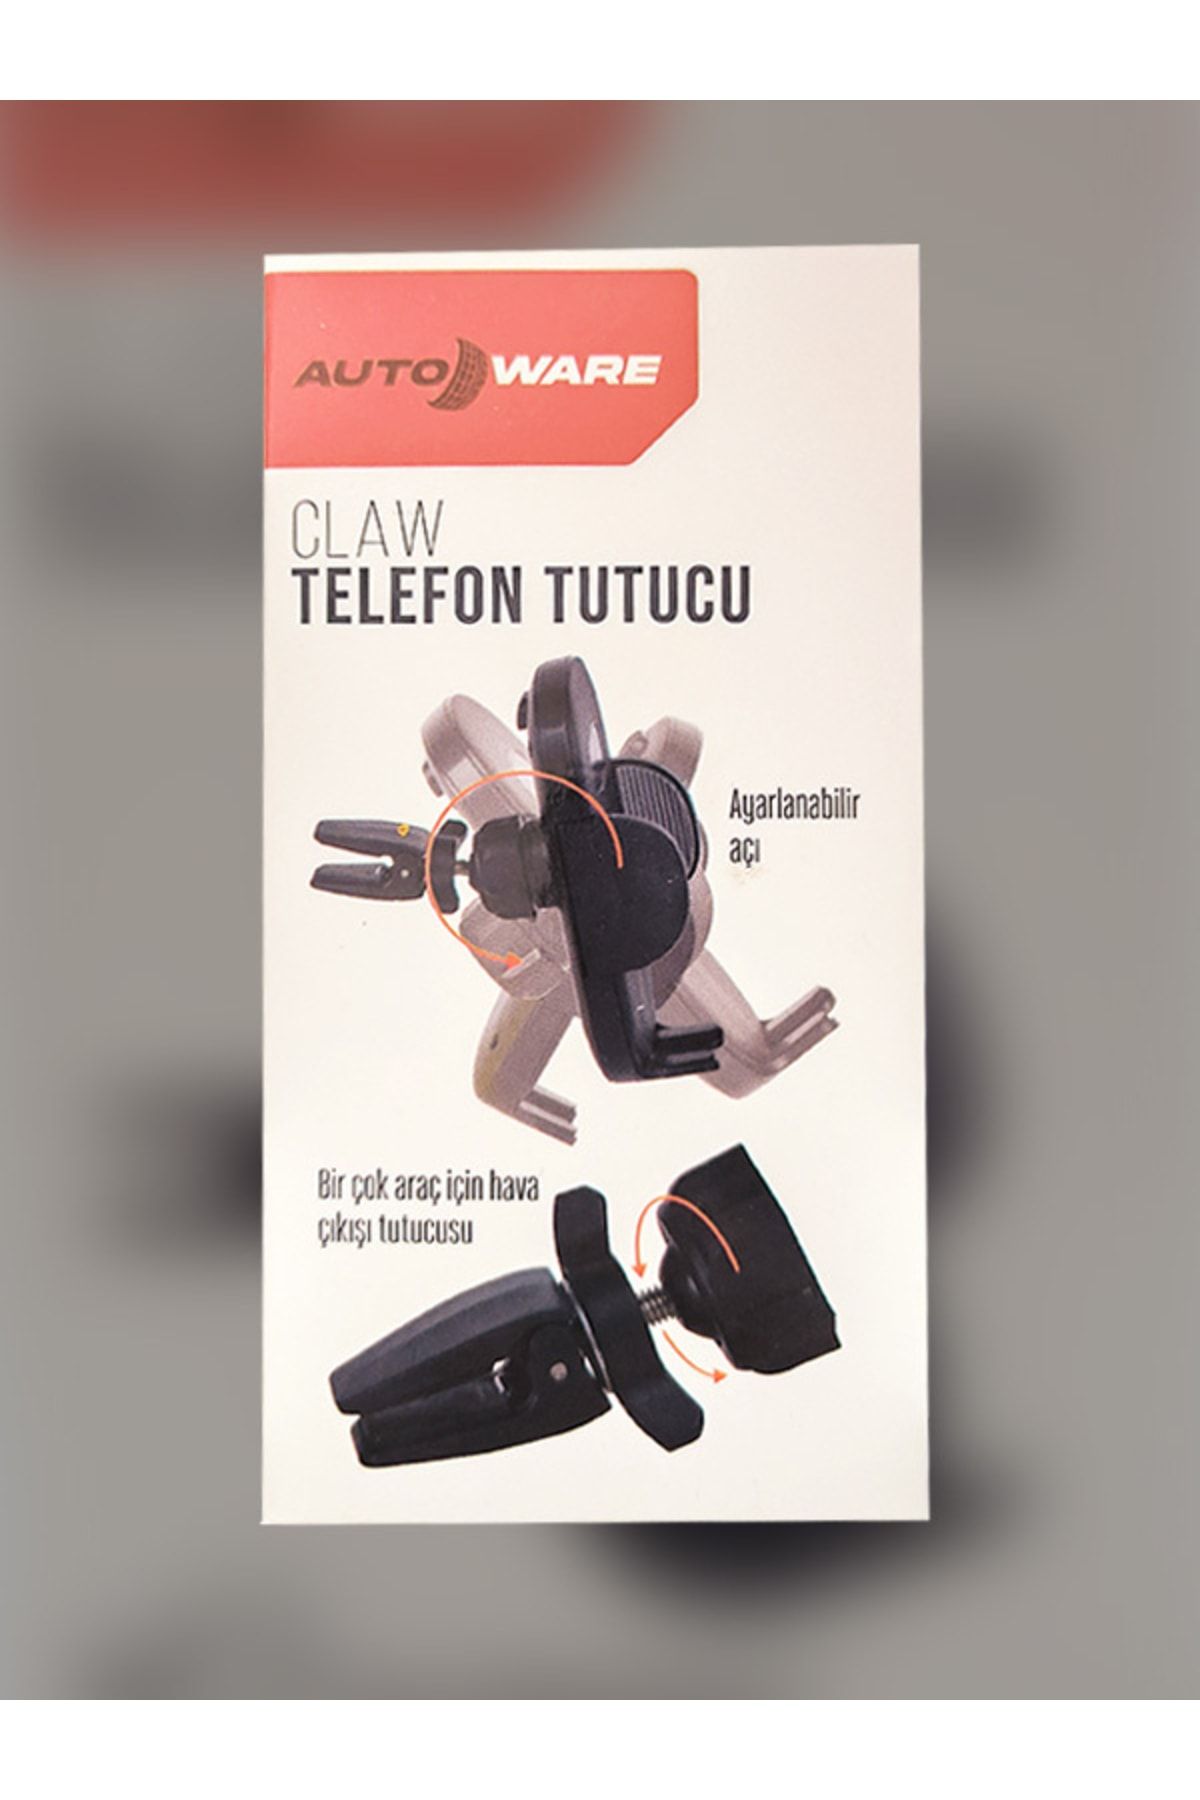 Autoware Auto Ware Telefon Tutucu Araç Içi Akrobat Tlfnttc0 Fiyatı,  Yorumları - Trendyol